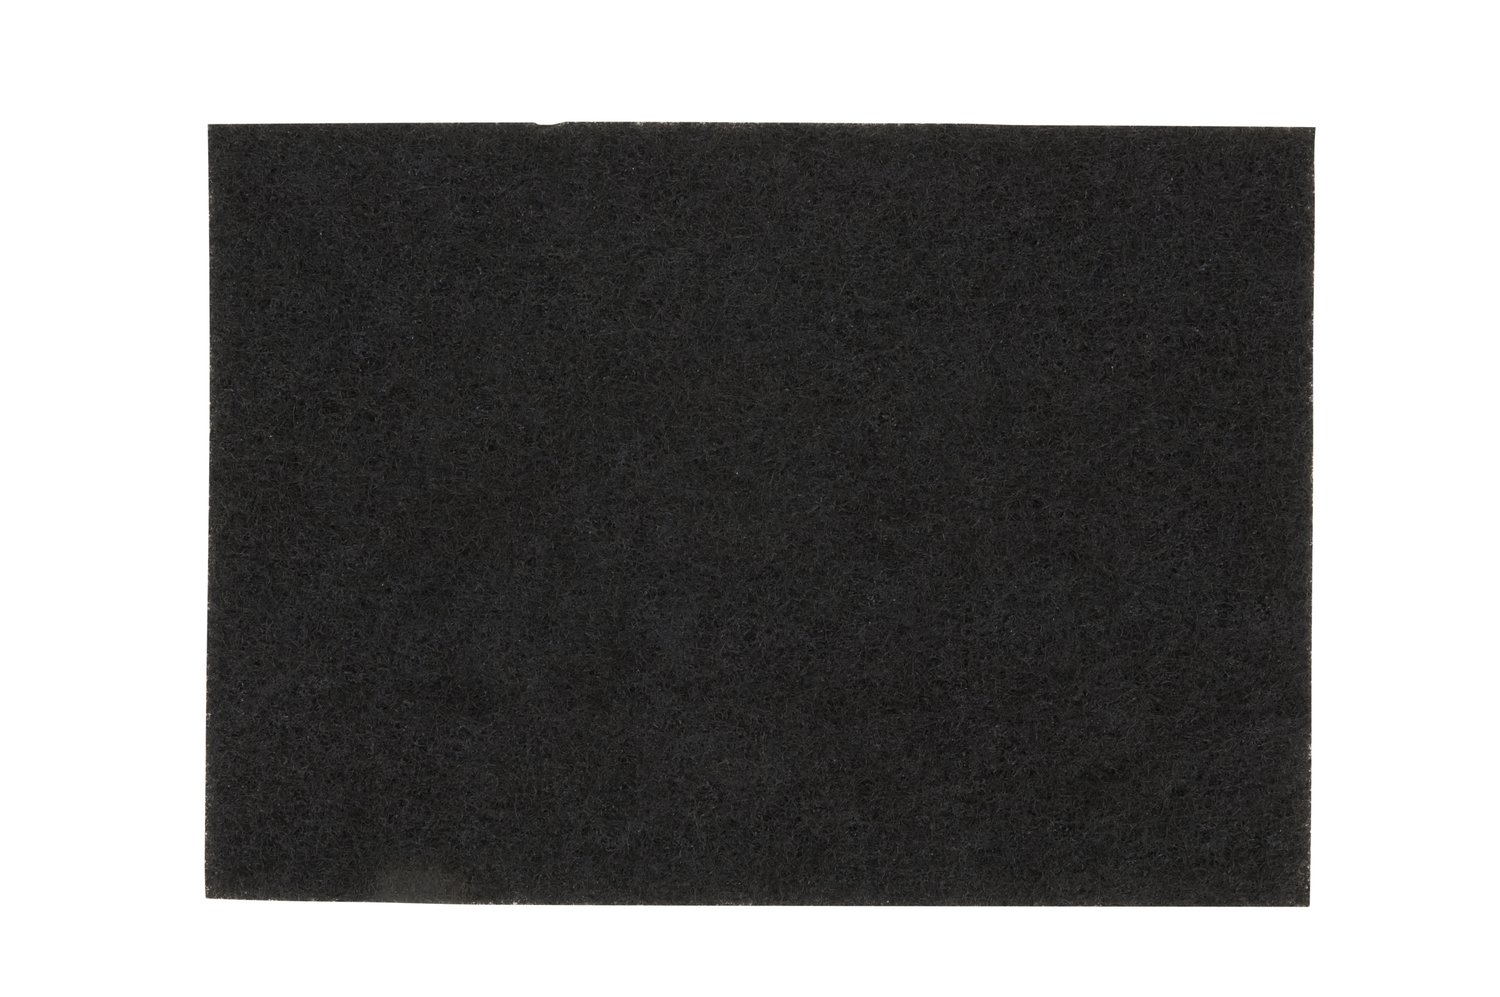 7000126867 - Scotch-Brite Black Stripping Pad 7200N, Black, 508 mm x 356 mm, 20 in x
14 in, 10 ea/Case